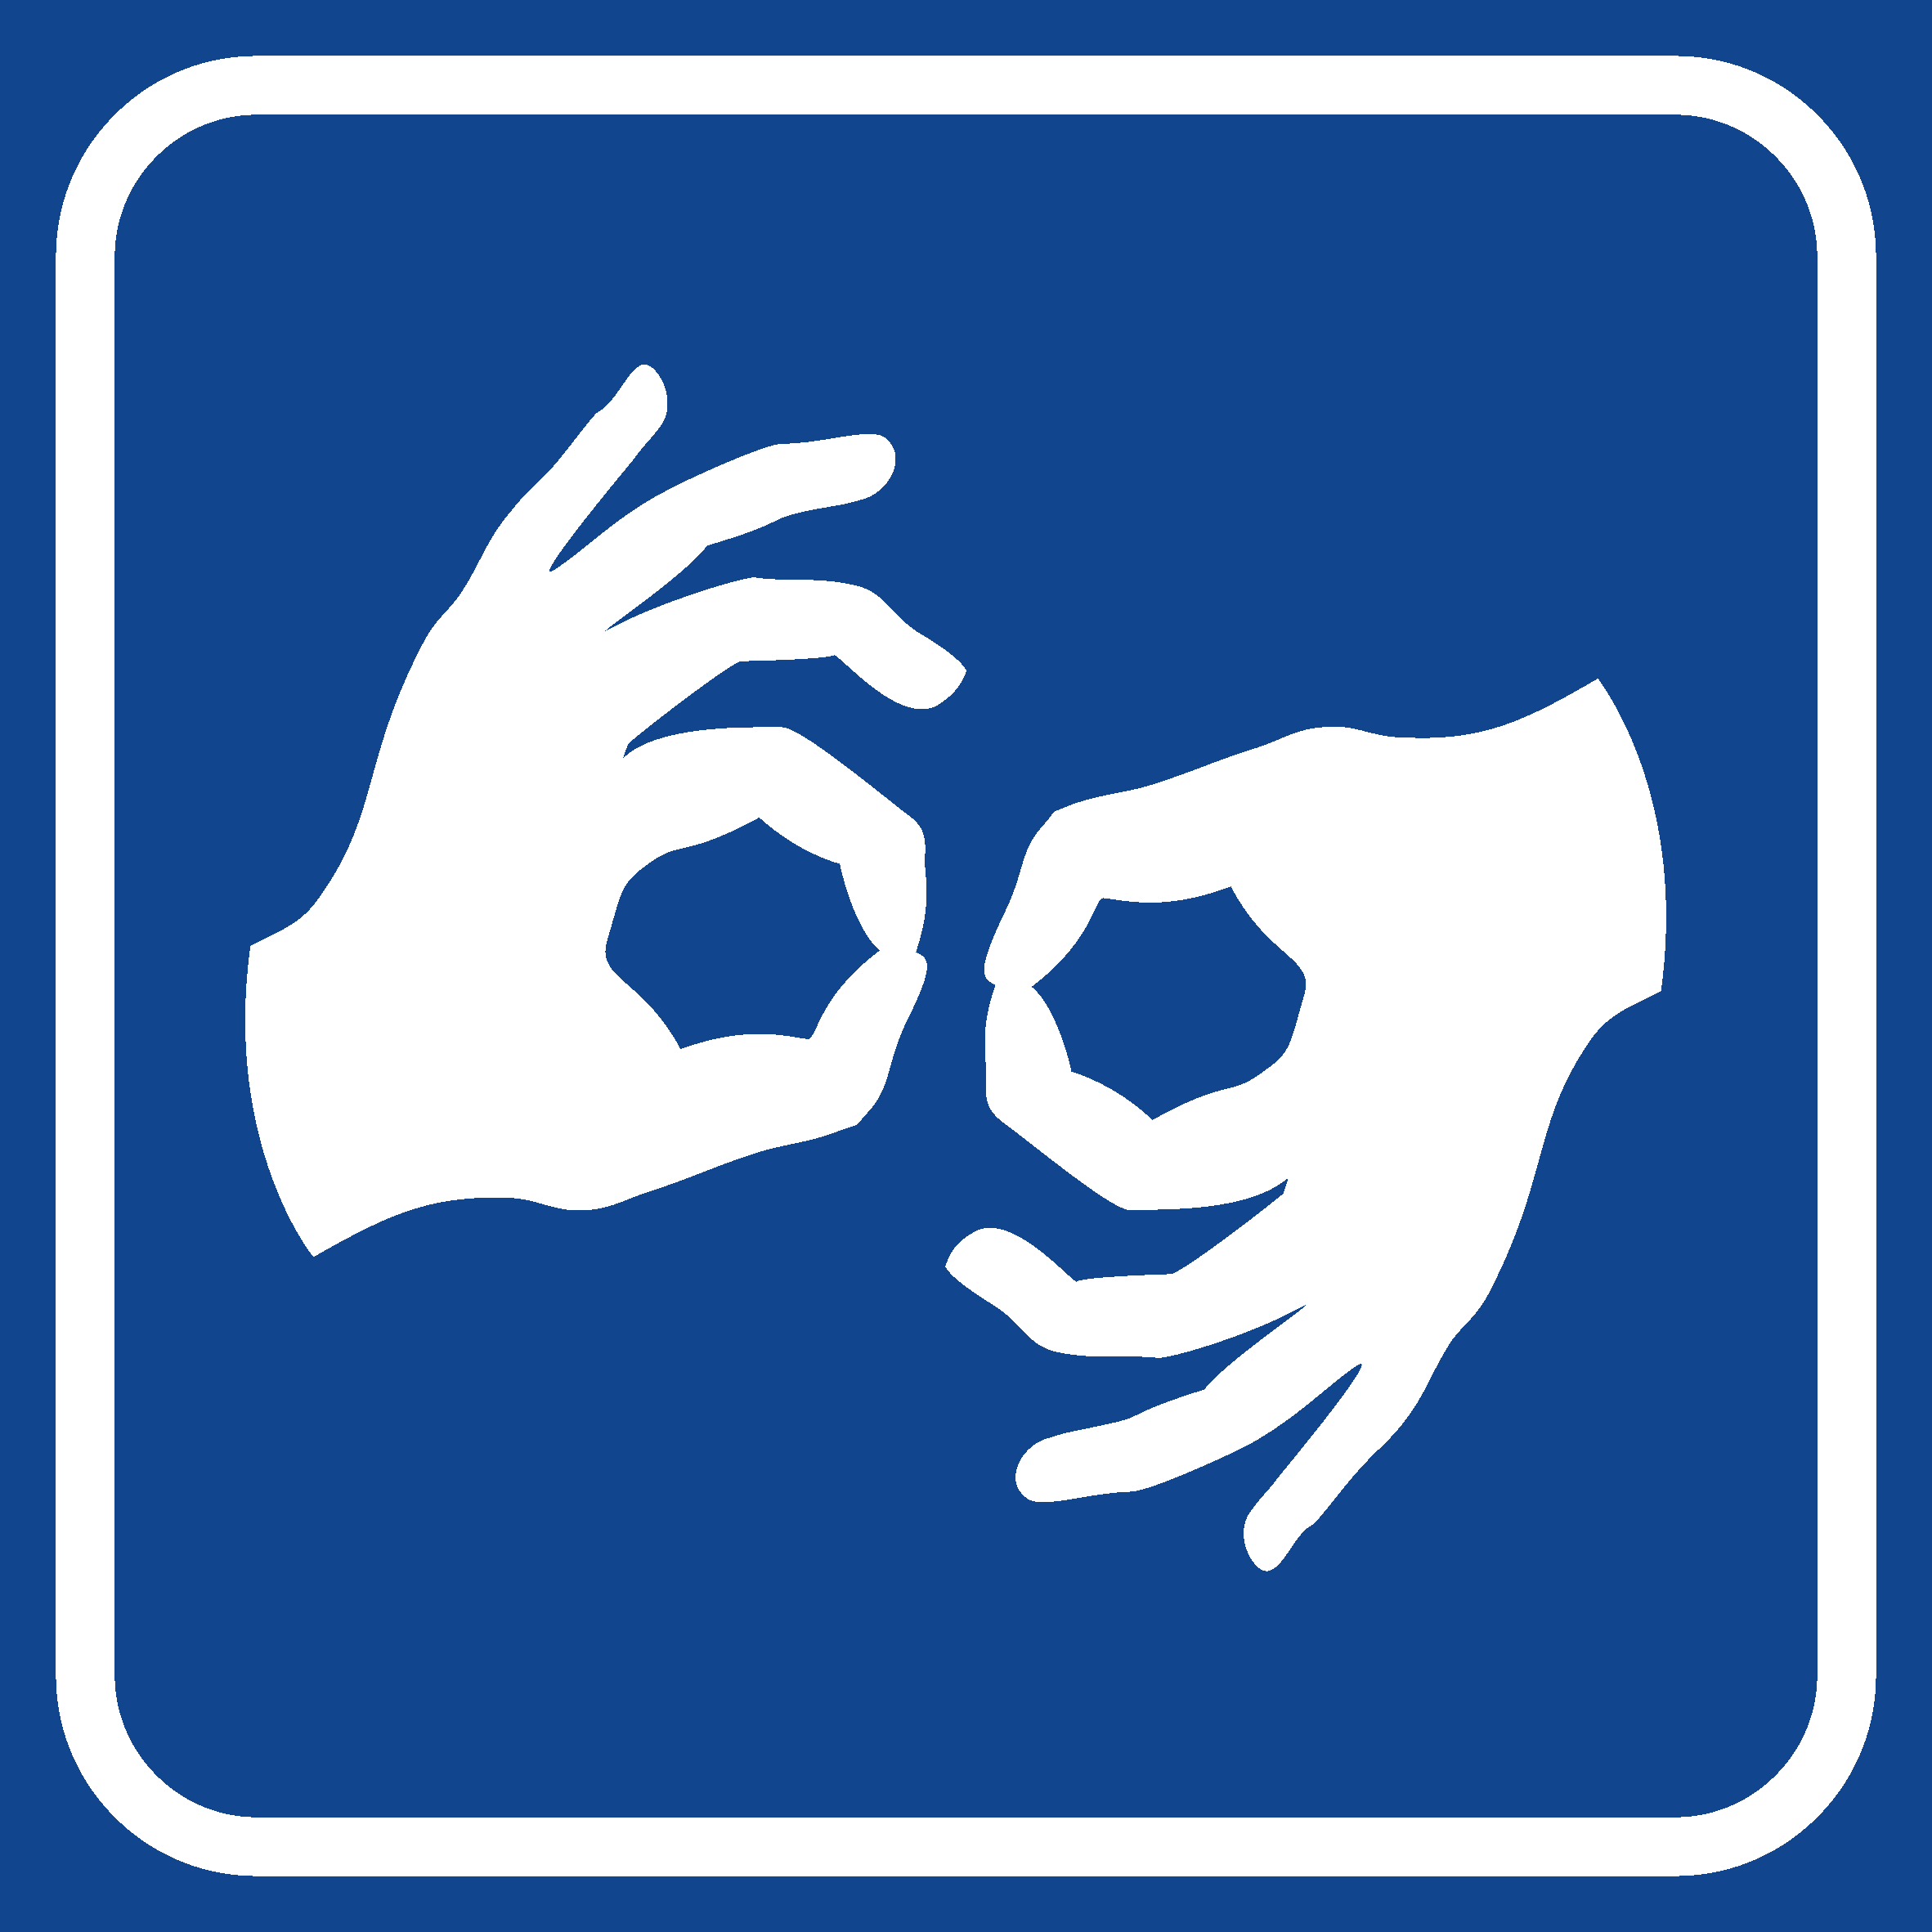 ikona piktogram z symbolem tłumacza polskiego języka migowego